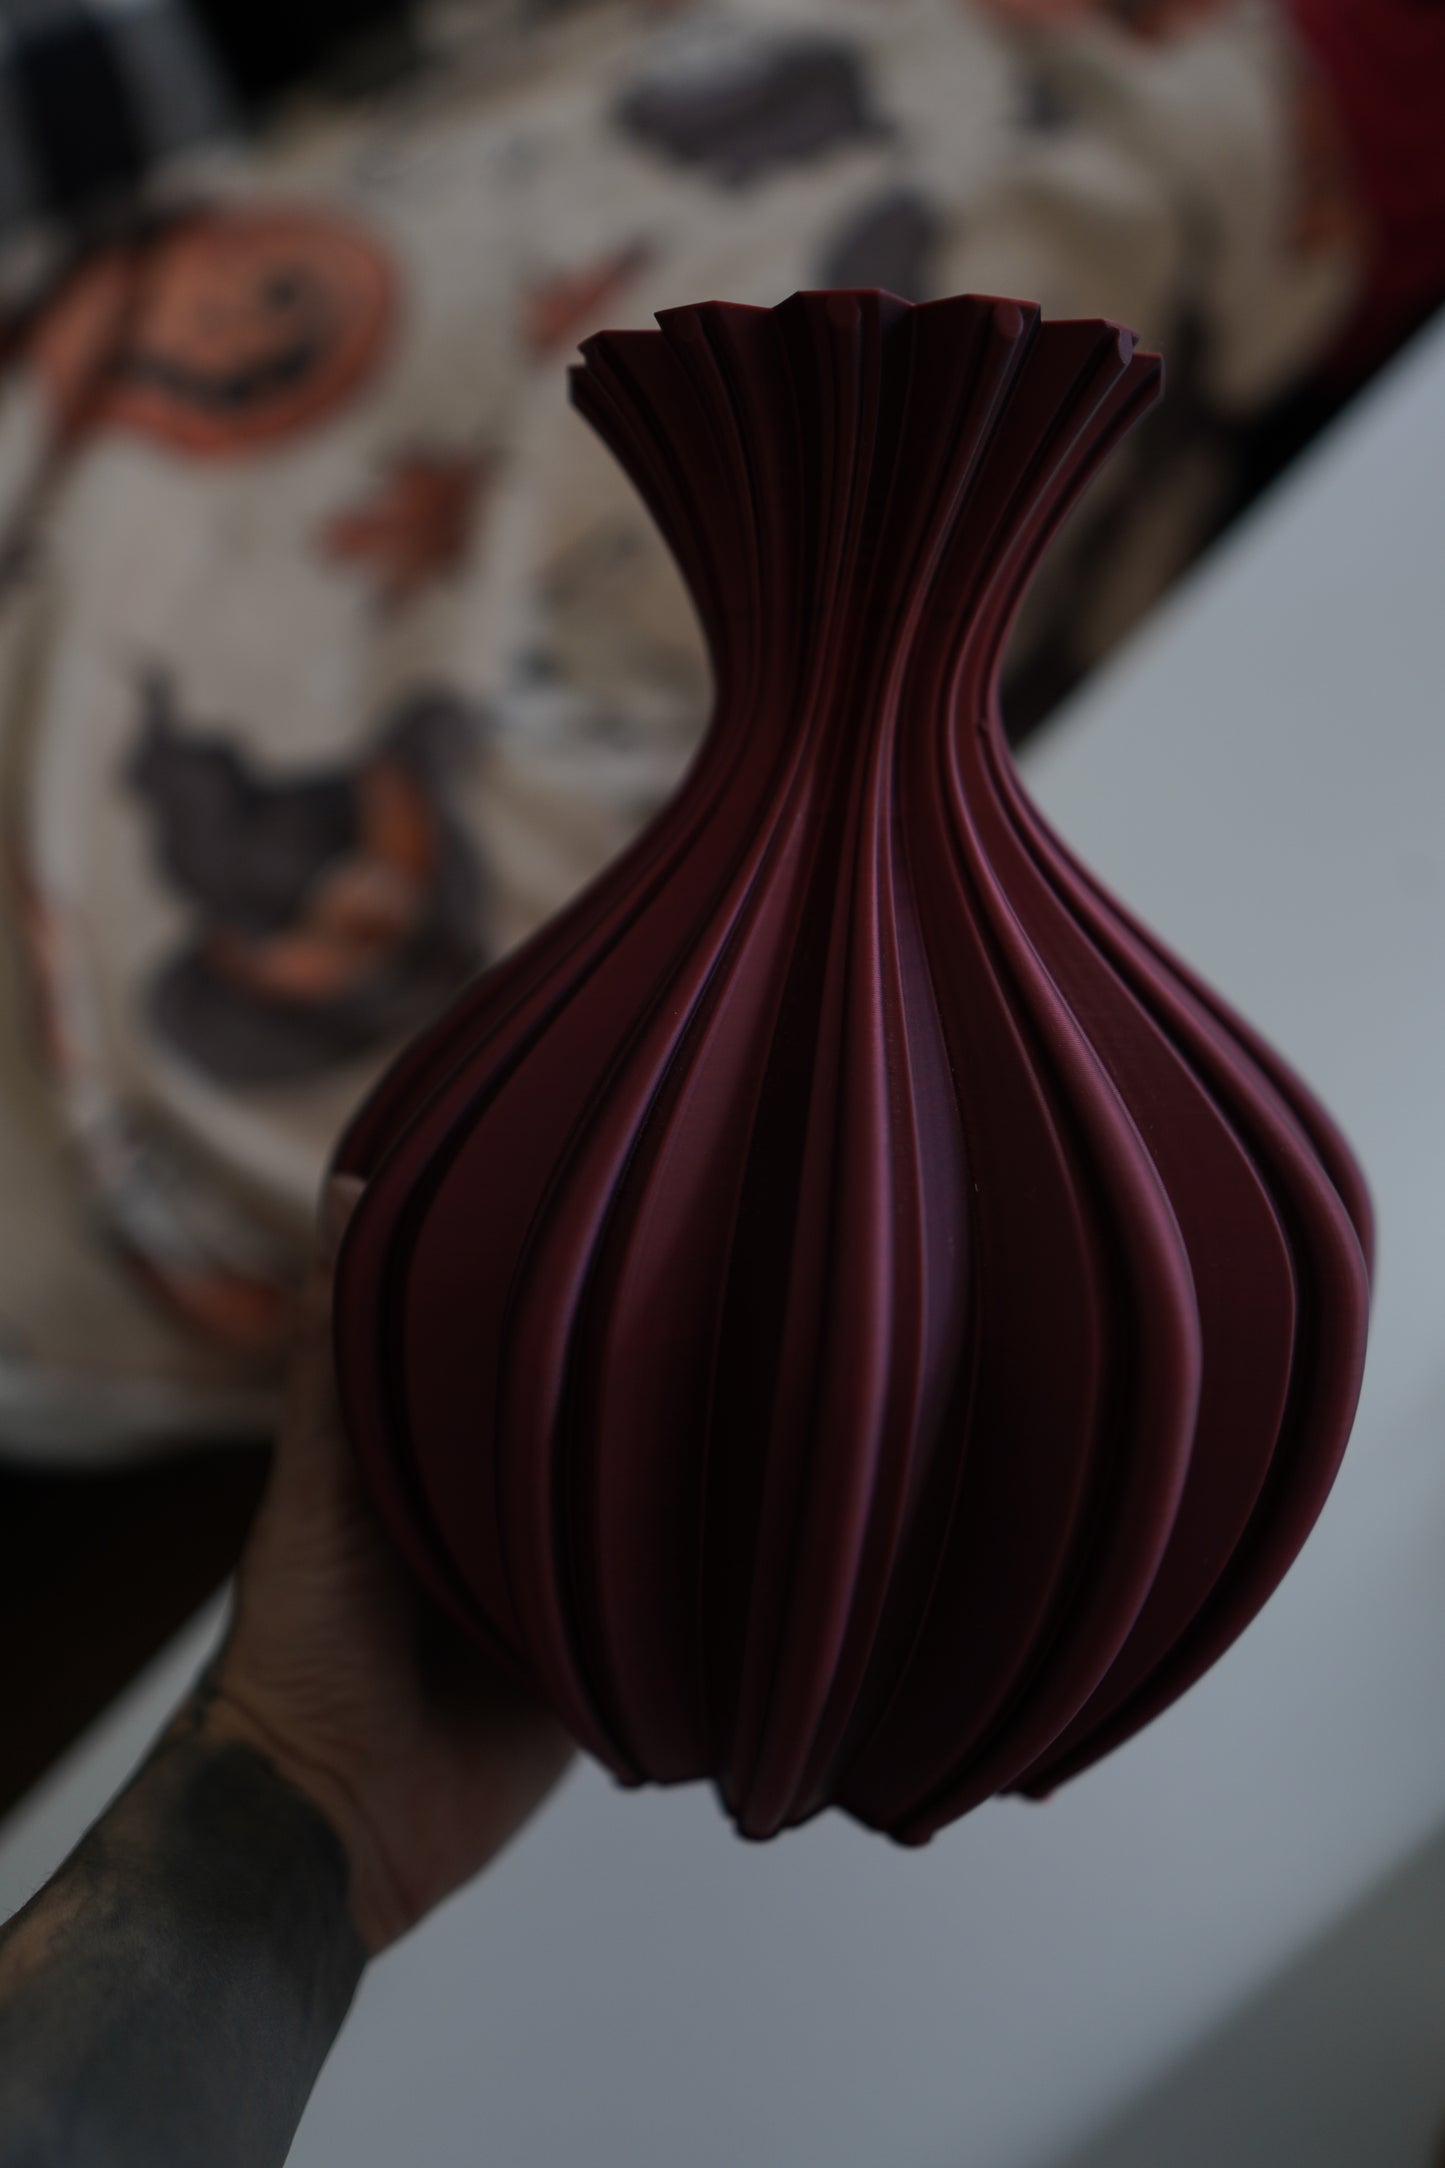 Gothic Vase